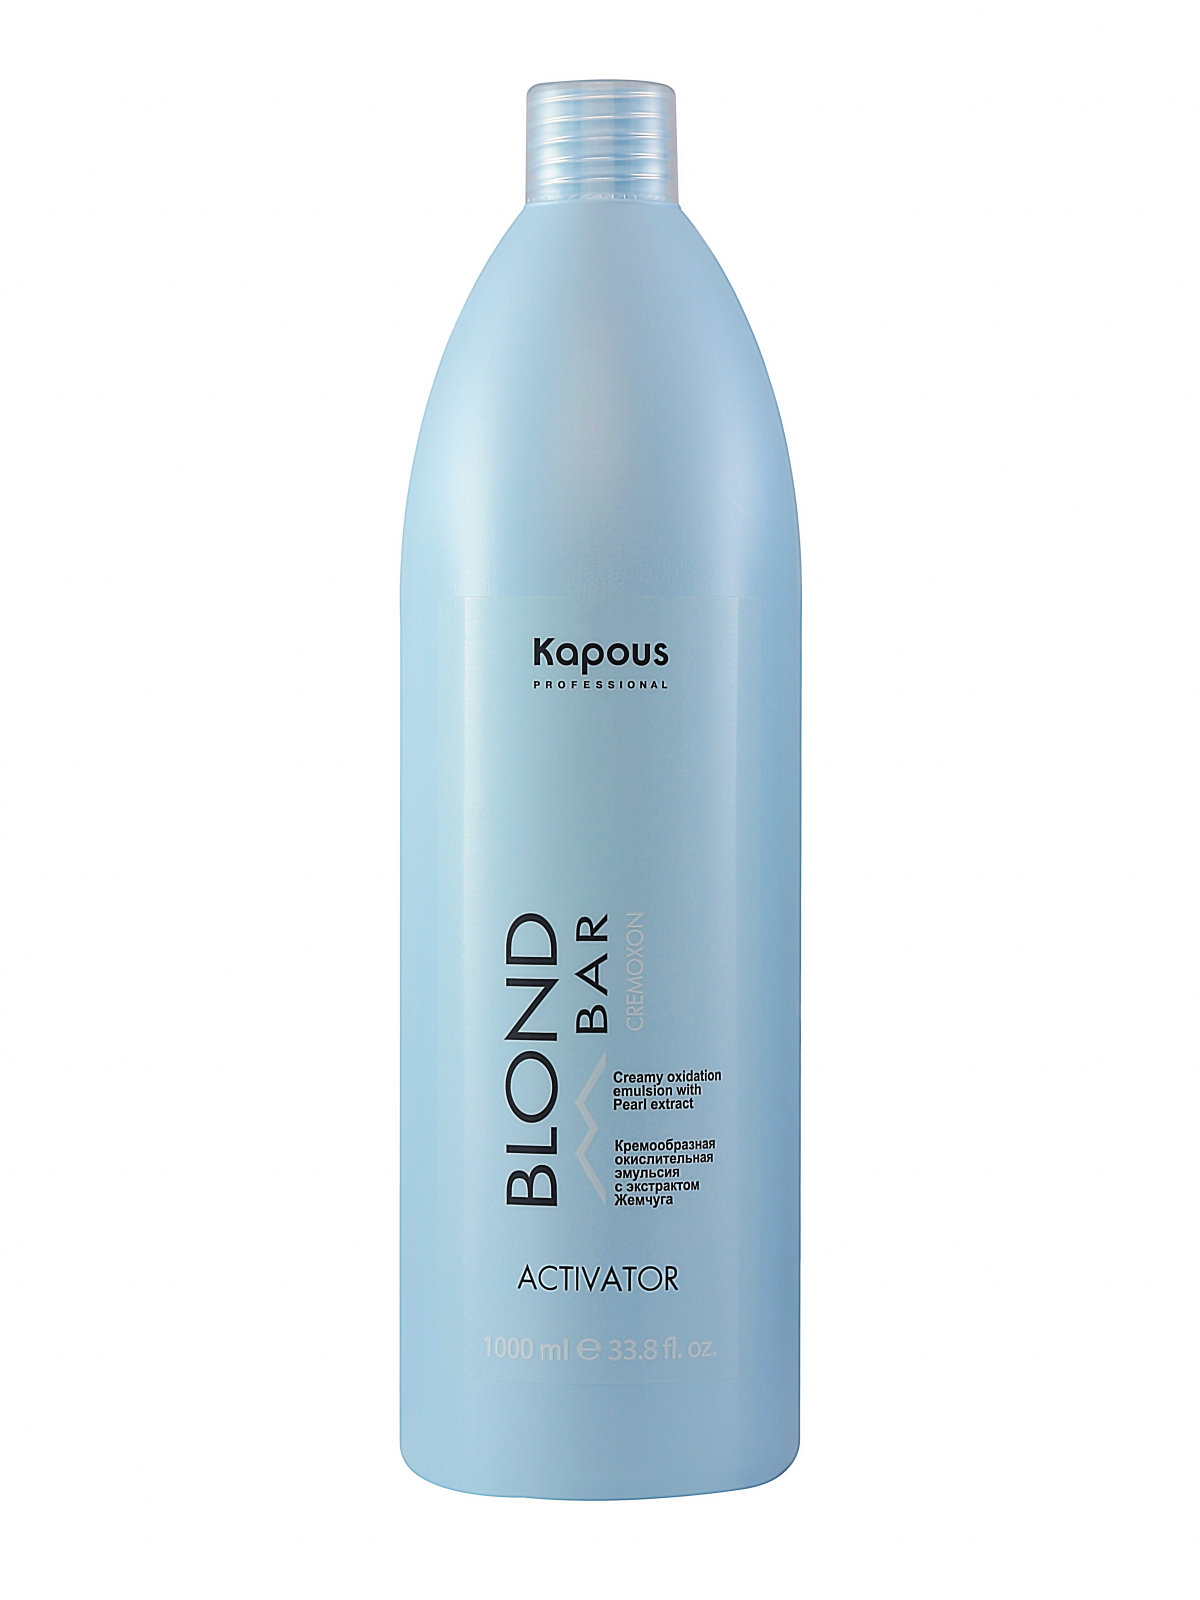 Активатор Kapous BLOND BAR для окрашивания волос 1000 мл кремообразная окислительная эмульсия с экстрактом жемчуга blond cremoxon 1 5 %